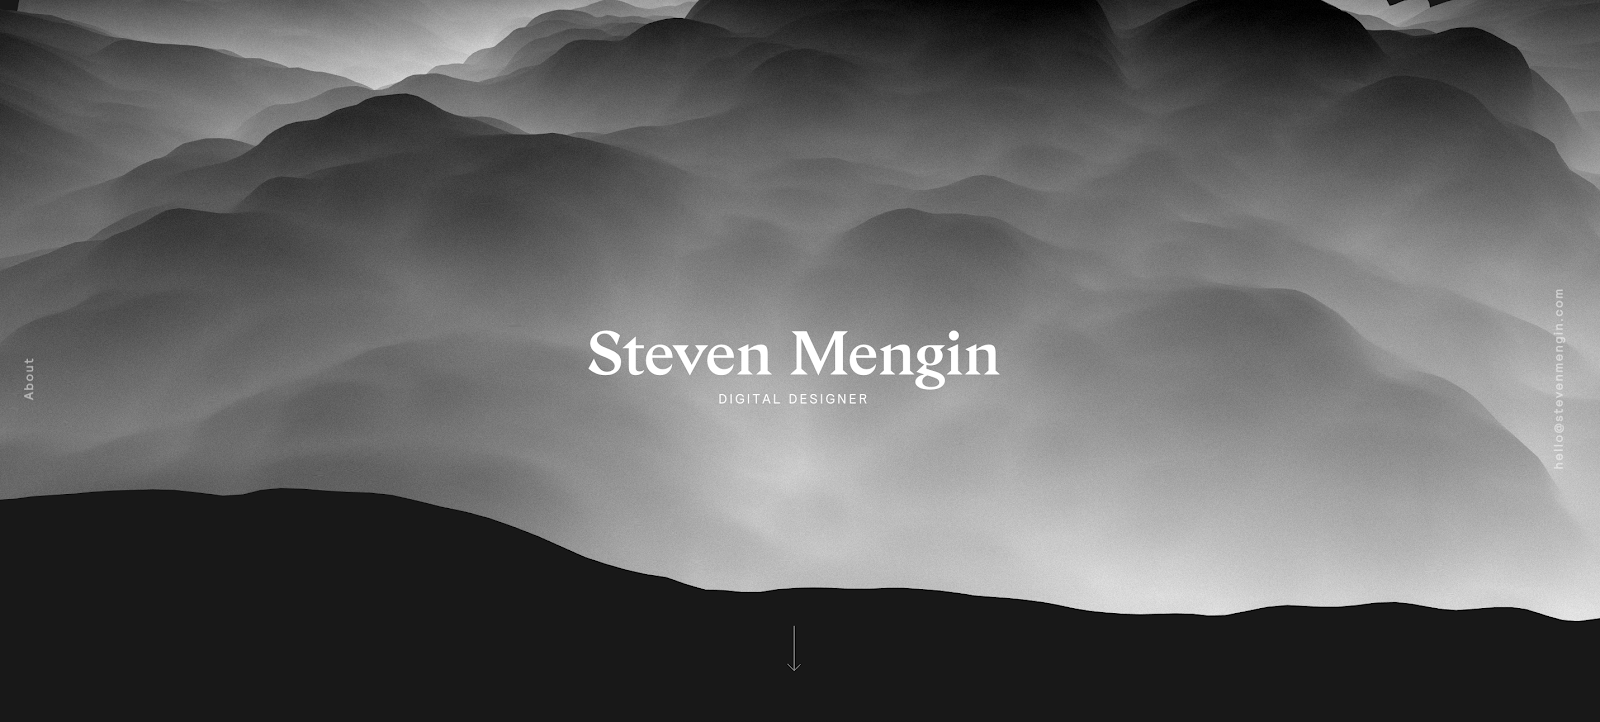 Portafolio de desarrollador web de Steven Mengin